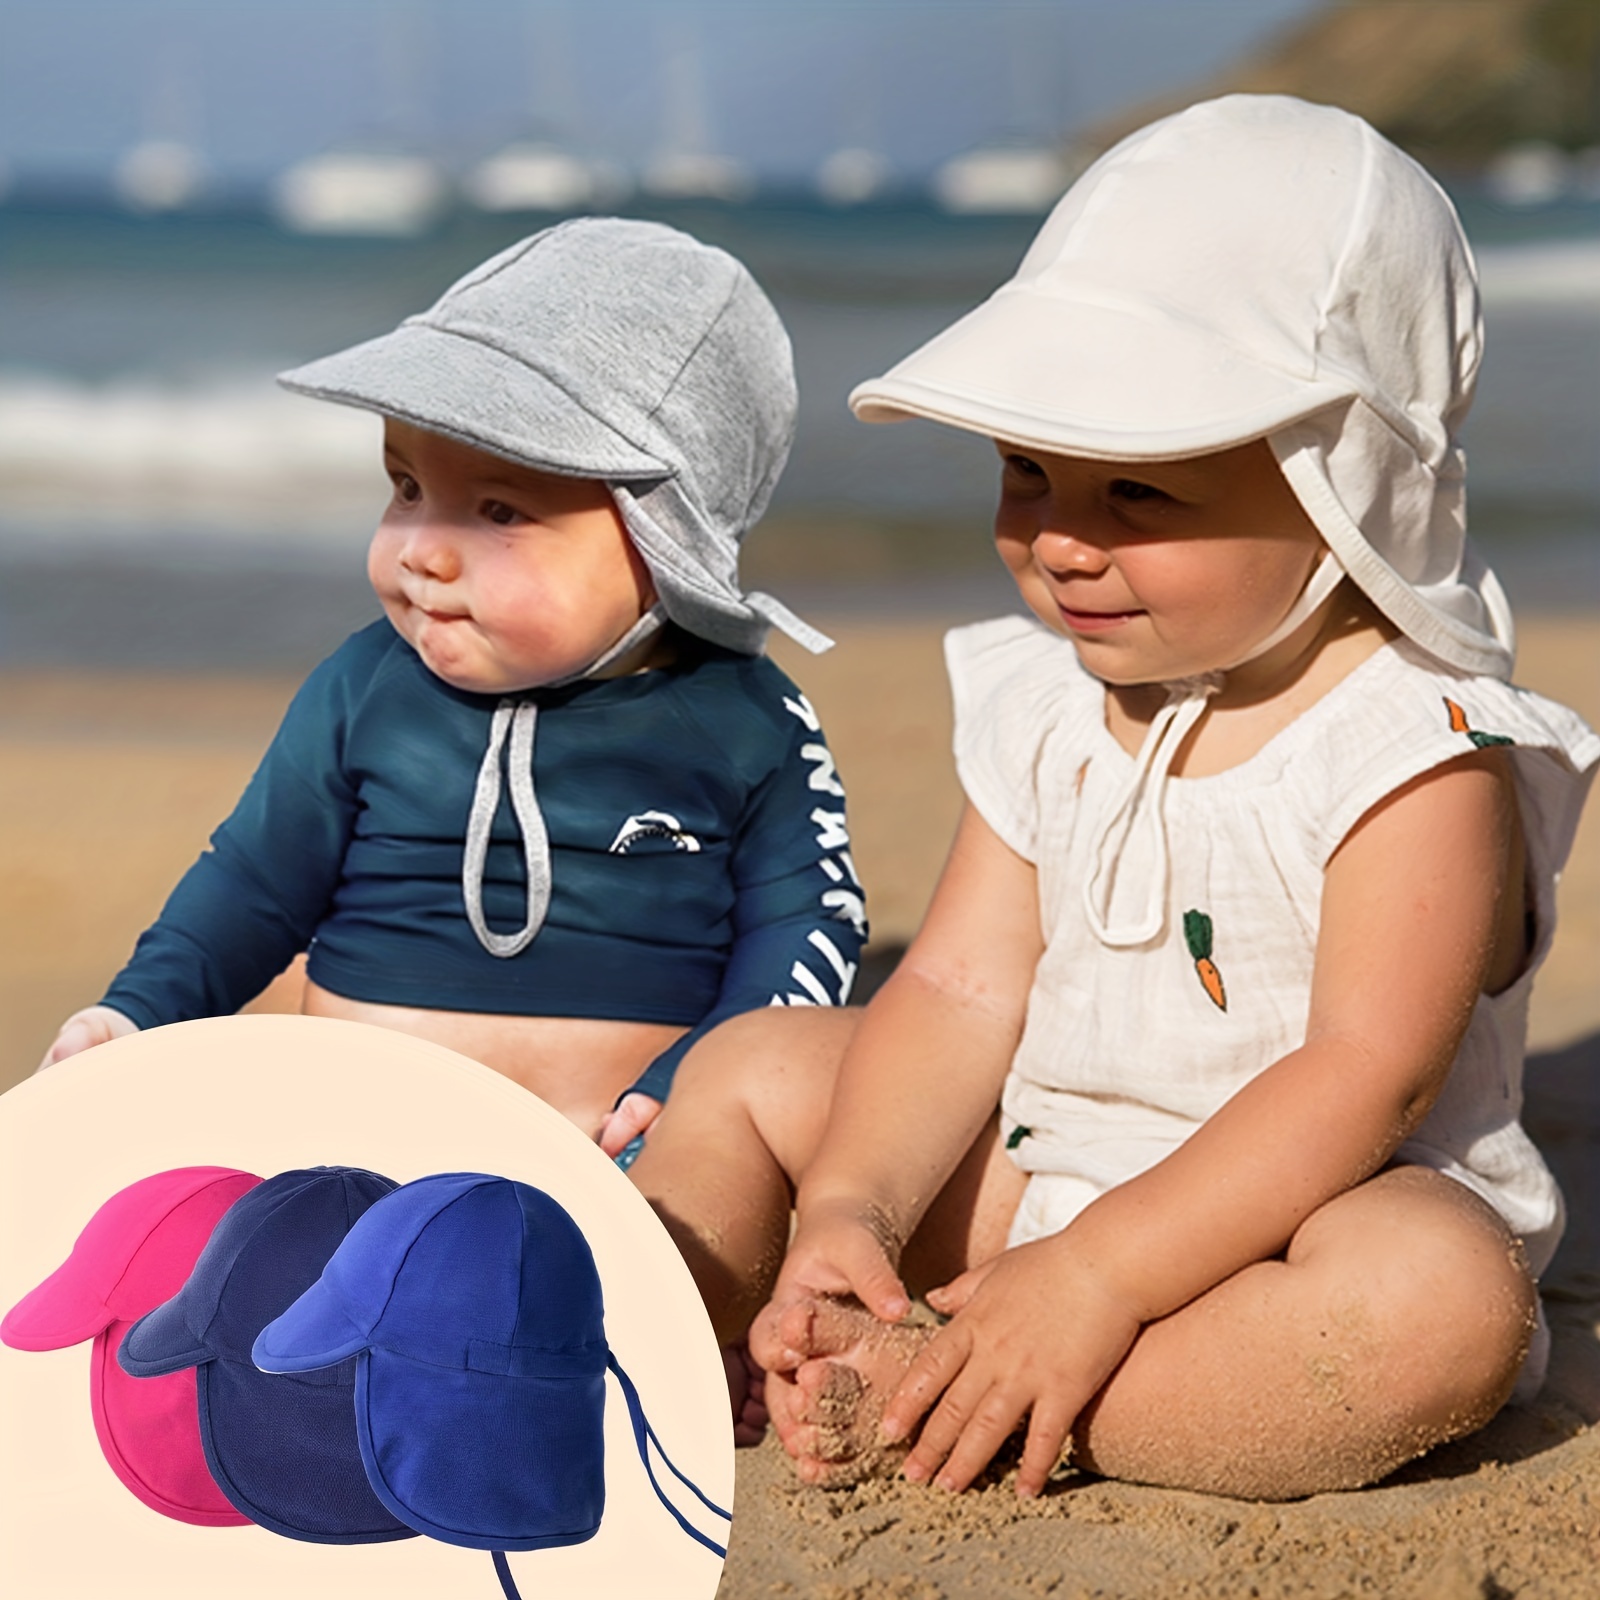 Sombreros Y Gorras Para Niños - Envío Gratis Para Nuevos Usuarios